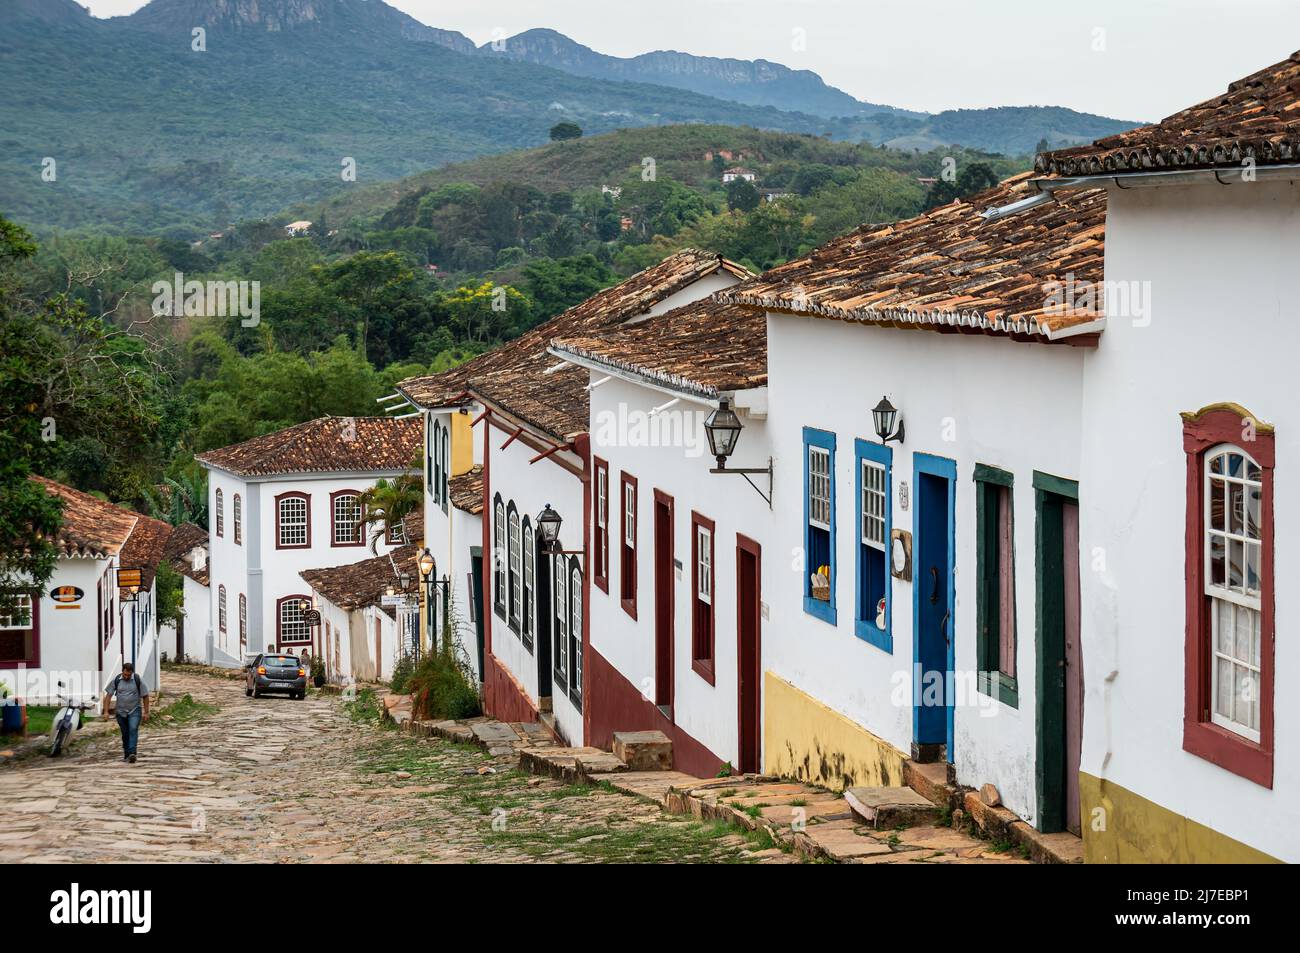 Fachada de muchas coloridas casas coloniales situadas en la calle adoquinada Rua da Camara en el centro histórico Tiradentes bajo el cielo nublado. Foto de stock